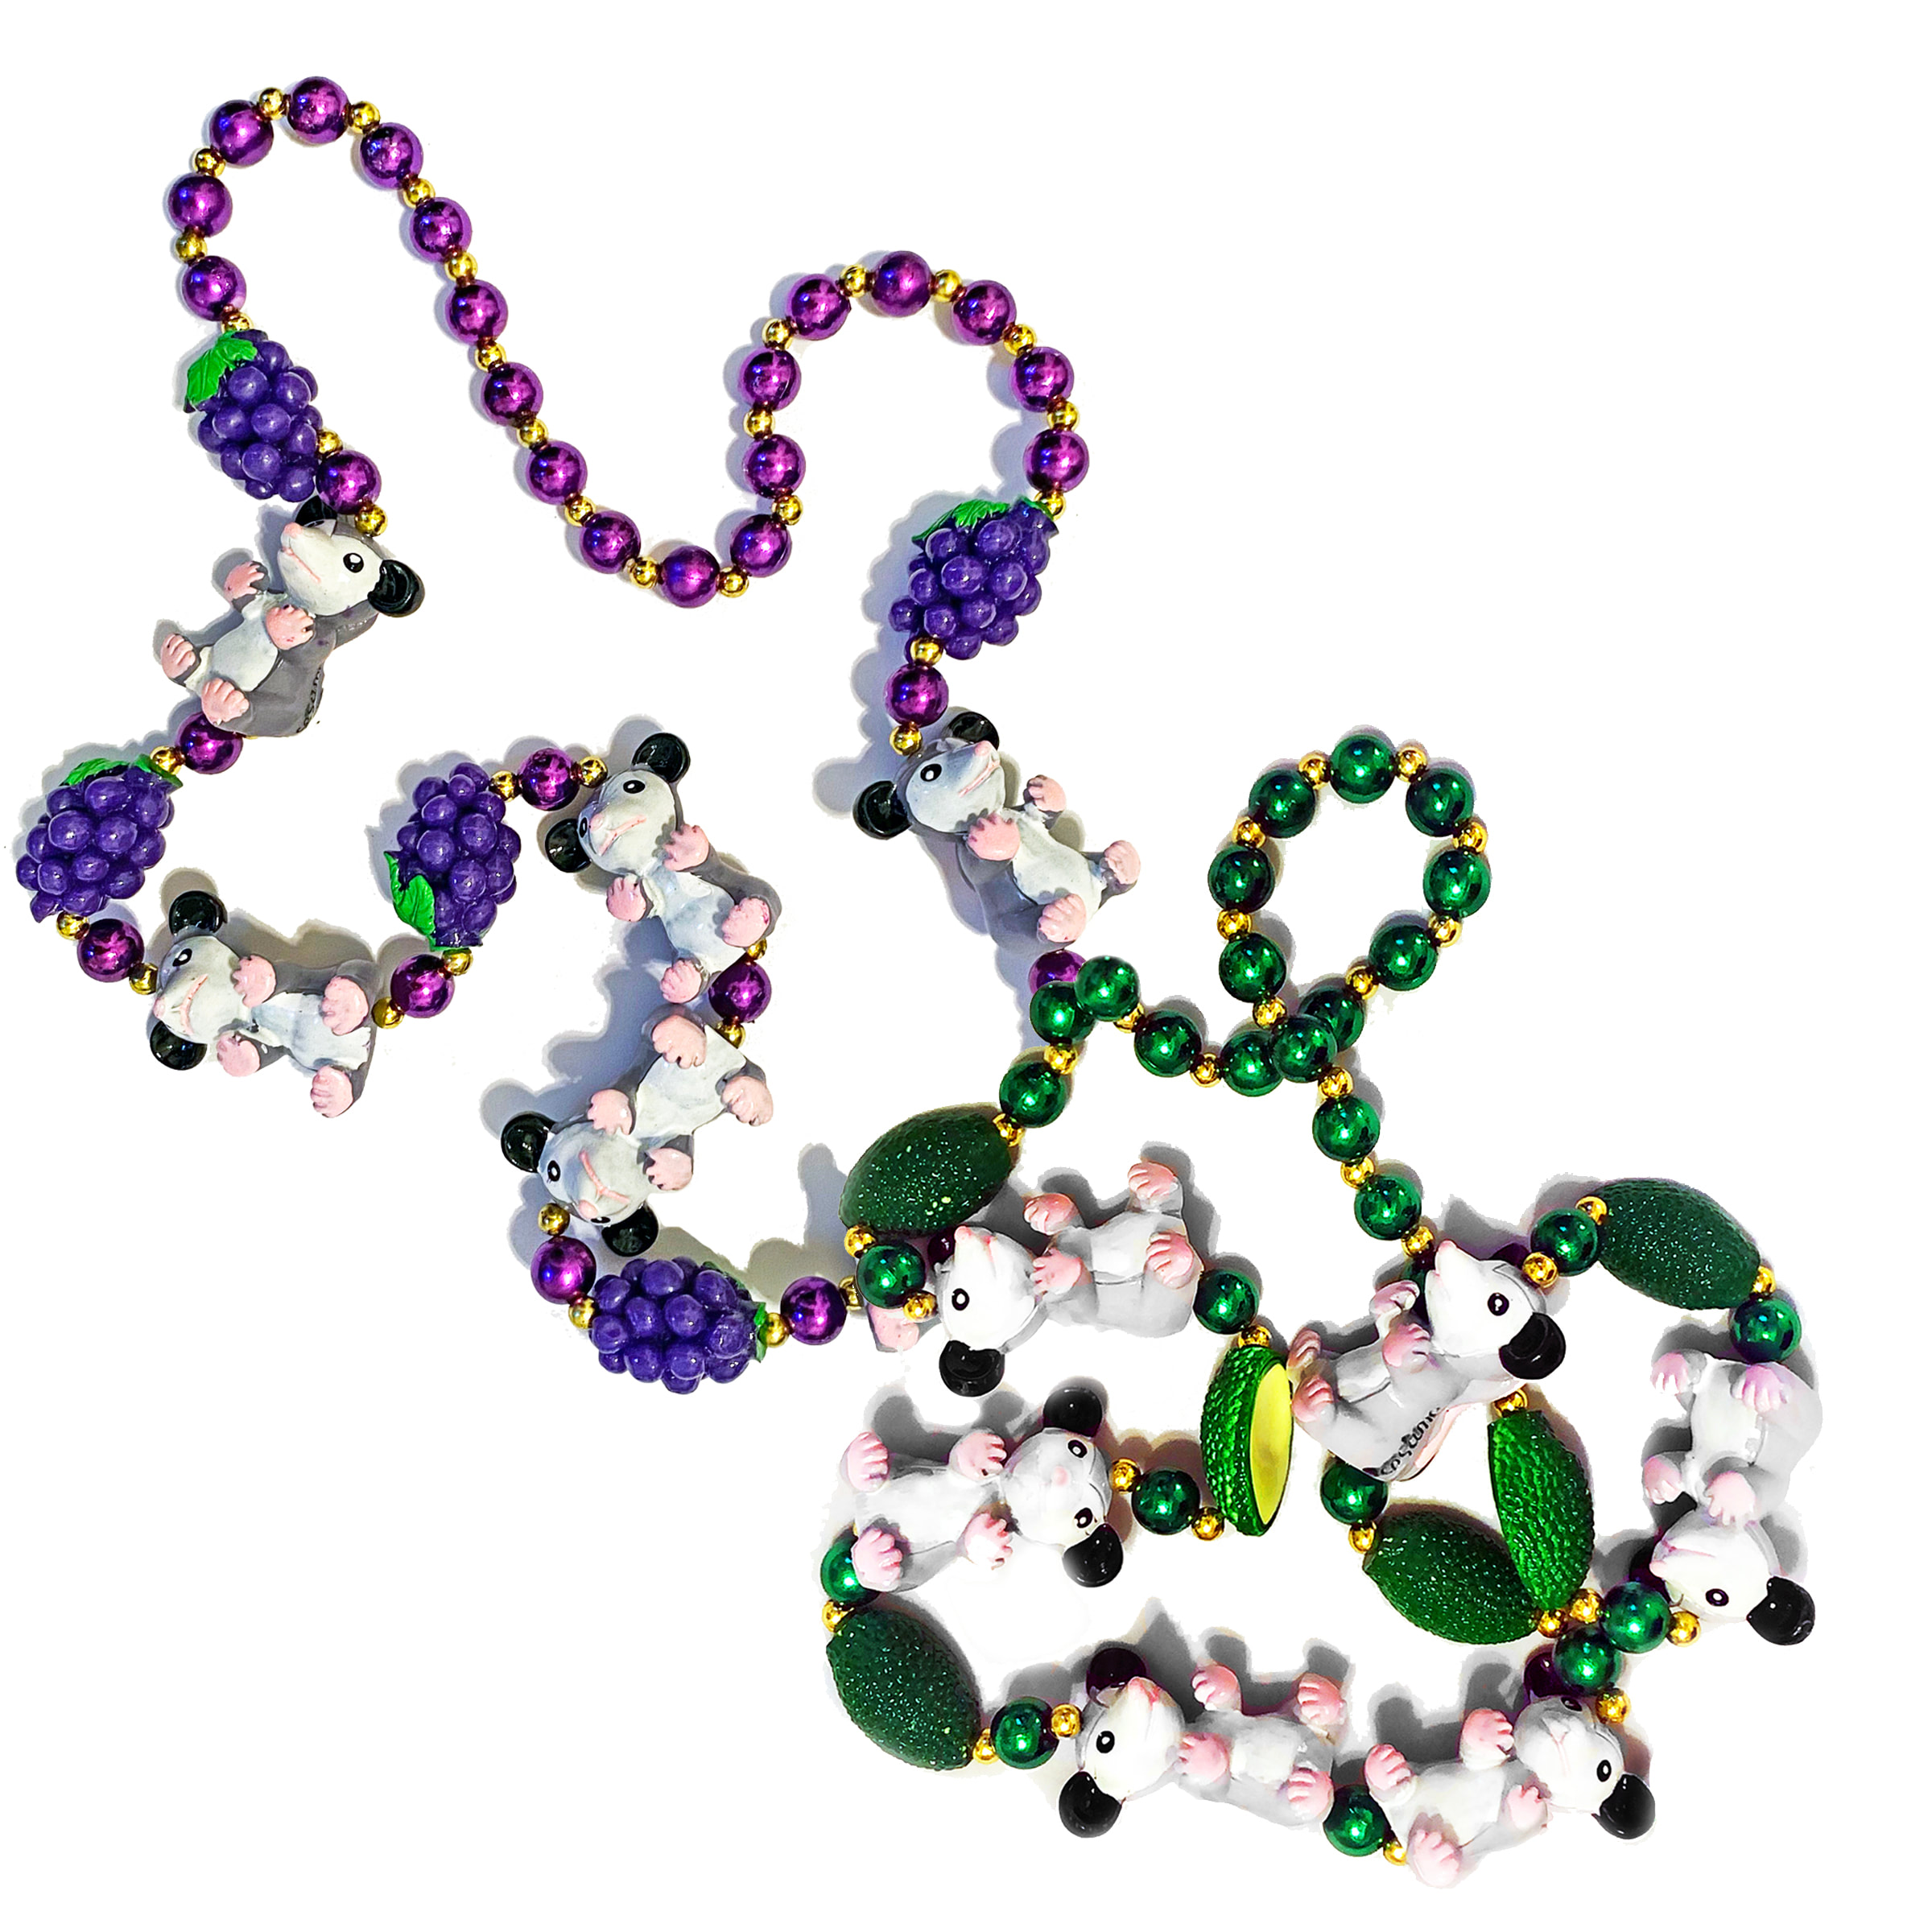 Iconic Original Sesame Mardi Gras Beads — Grapes & Avocados!